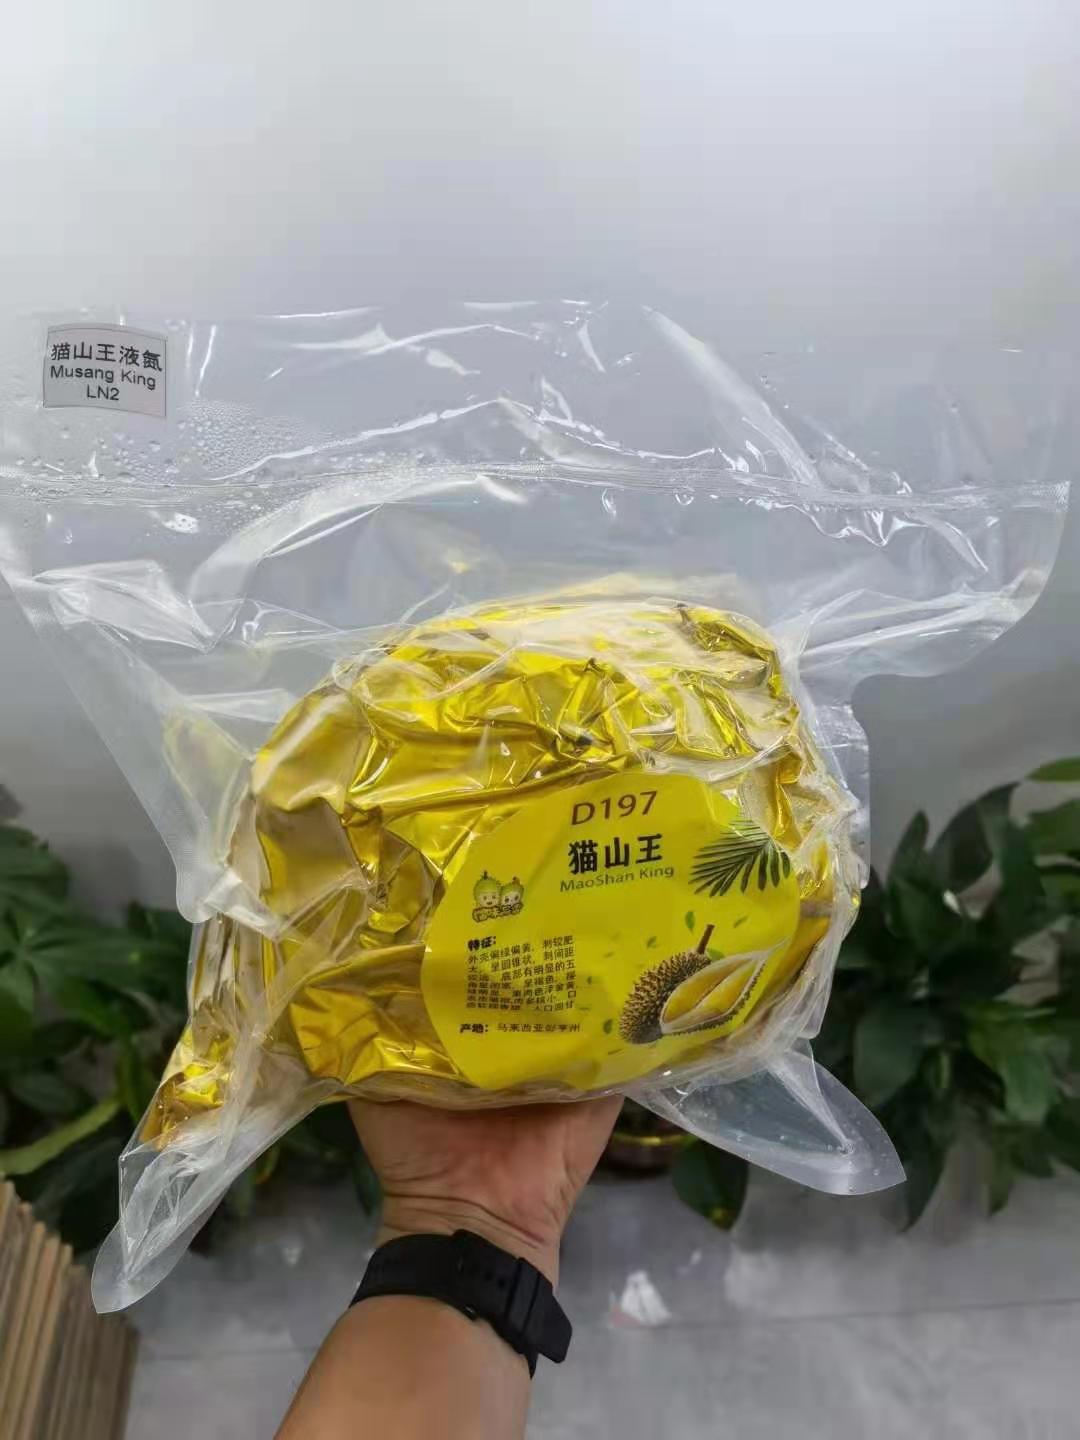 公司在马来西亚拥有自己的果园，直接进口到国内，质量三包，各类整果都有，10kg/件，接受预定！
猫山王液氮果批发价：1050/件（不含运费）
黑刺液氮果：1